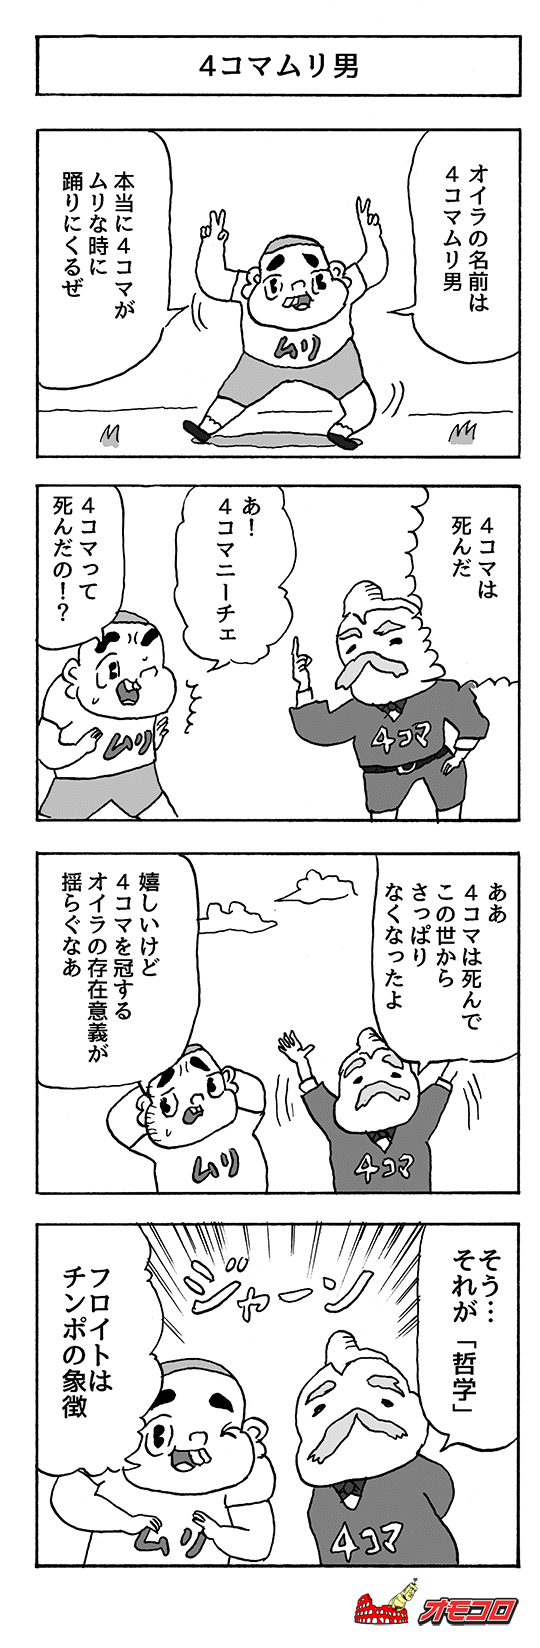 【4コマ漫画】4コマムリ男